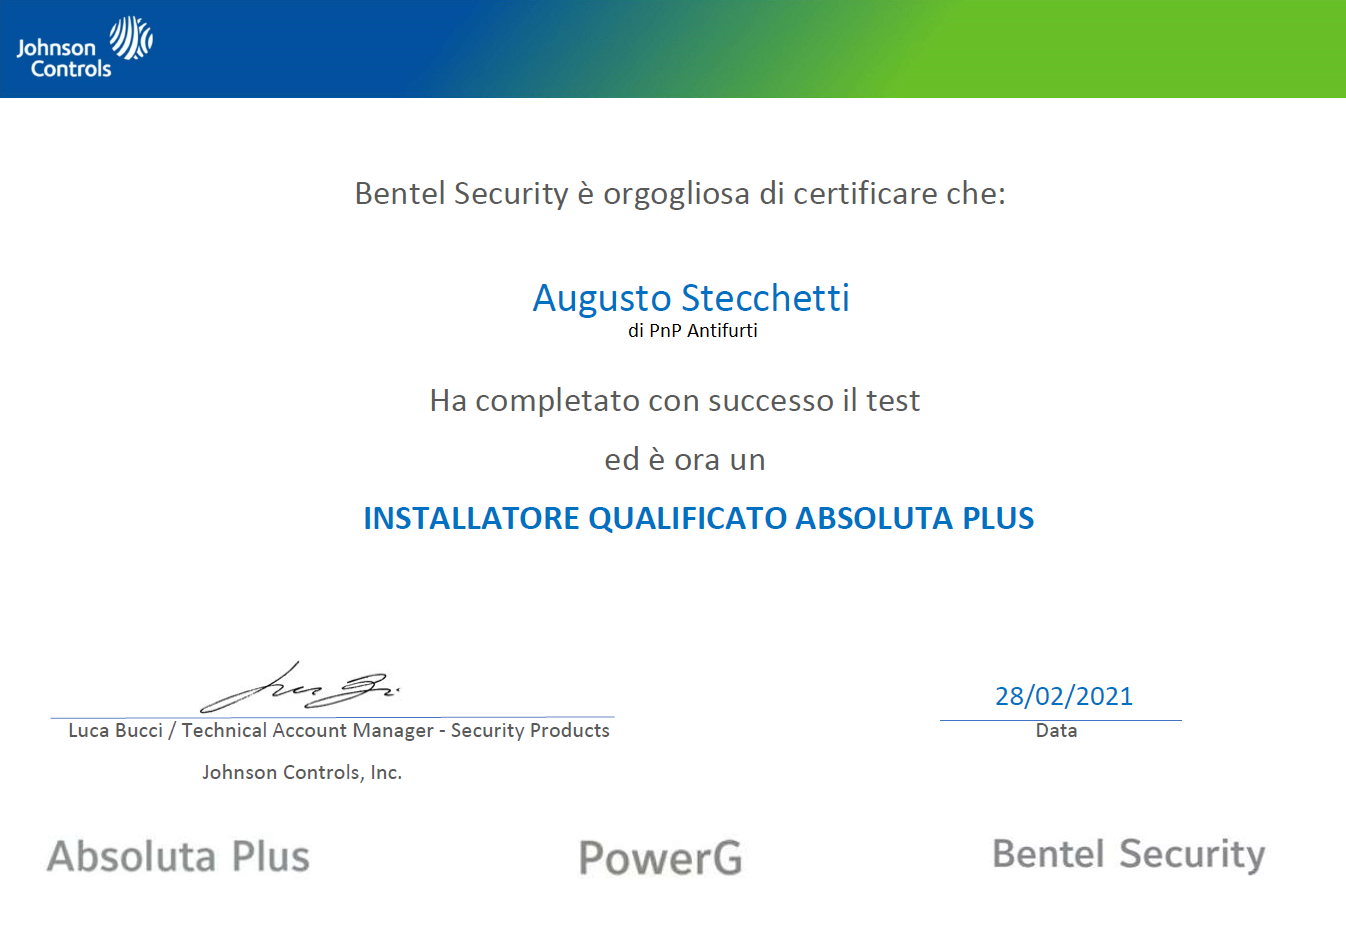 PnP Antifurti Certificato installatore qualificato Bentel Security Plus